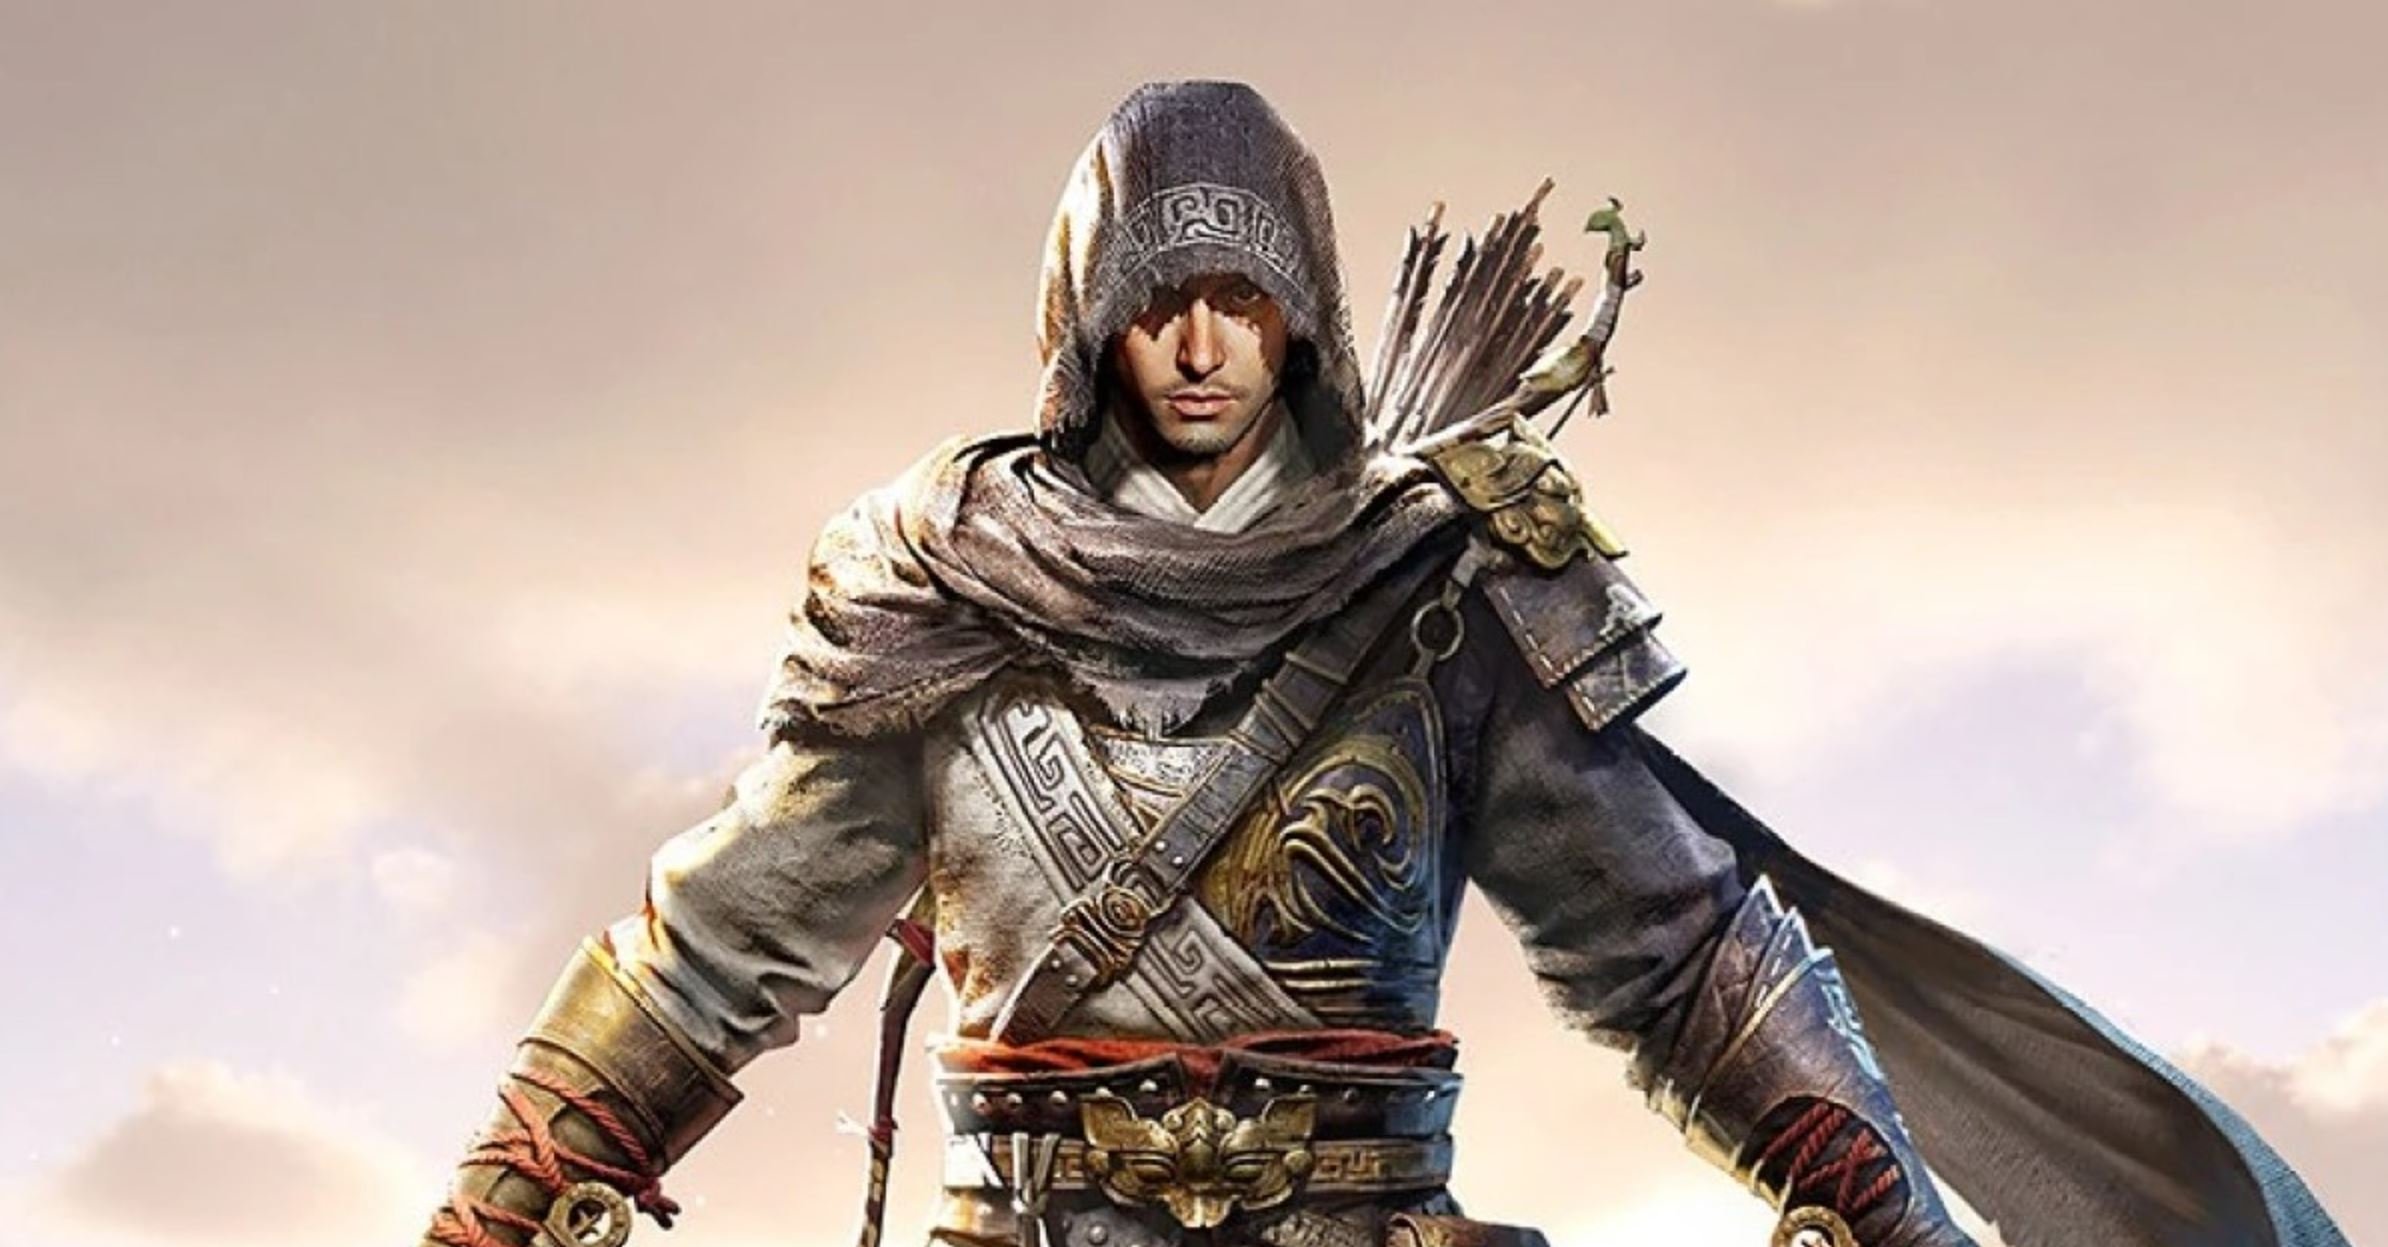 Assassin's Creed Jade : personne ne s'attendait à ça, c'est impressionnant